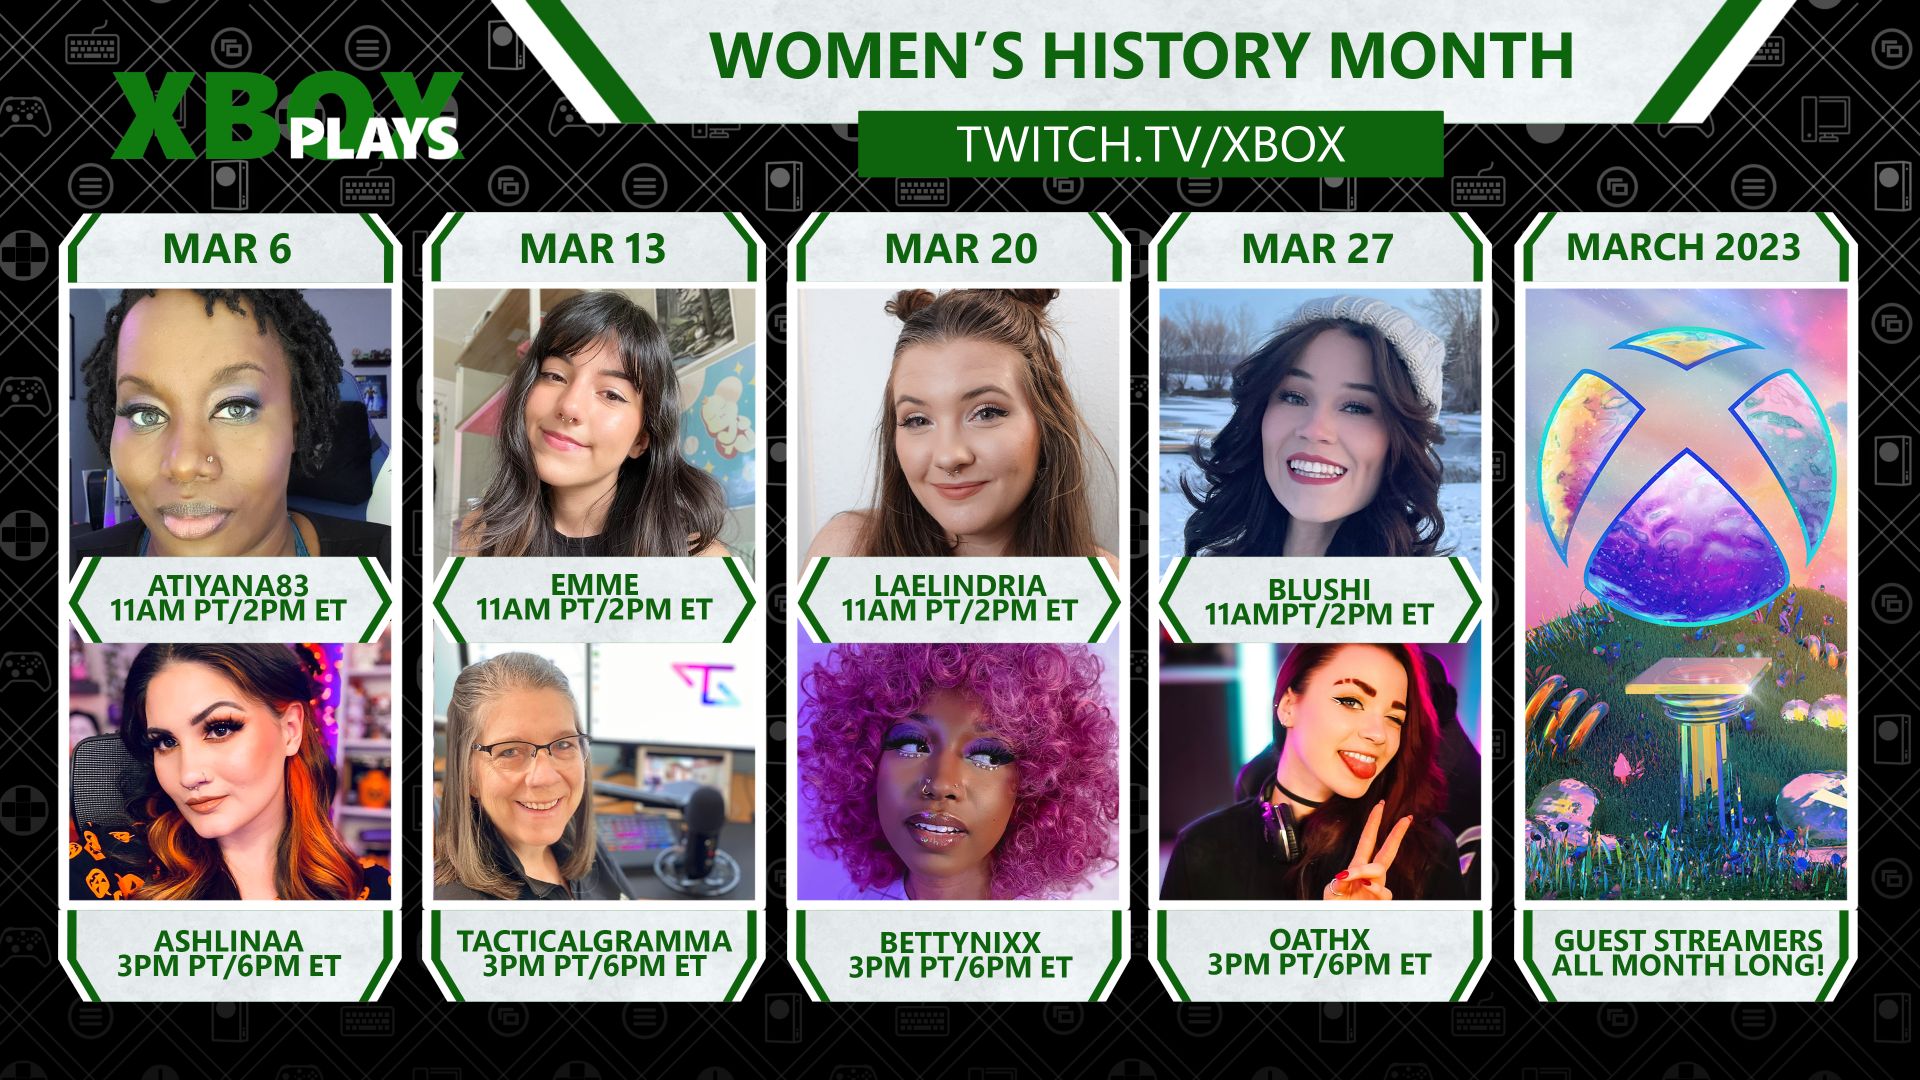 Μια συλλογική εικόνα με οκτώ γυναίκες παίκτες στο Xbox Plays για τον μήνα ιστορίας γυναικών στο twitch.tv/xbox.